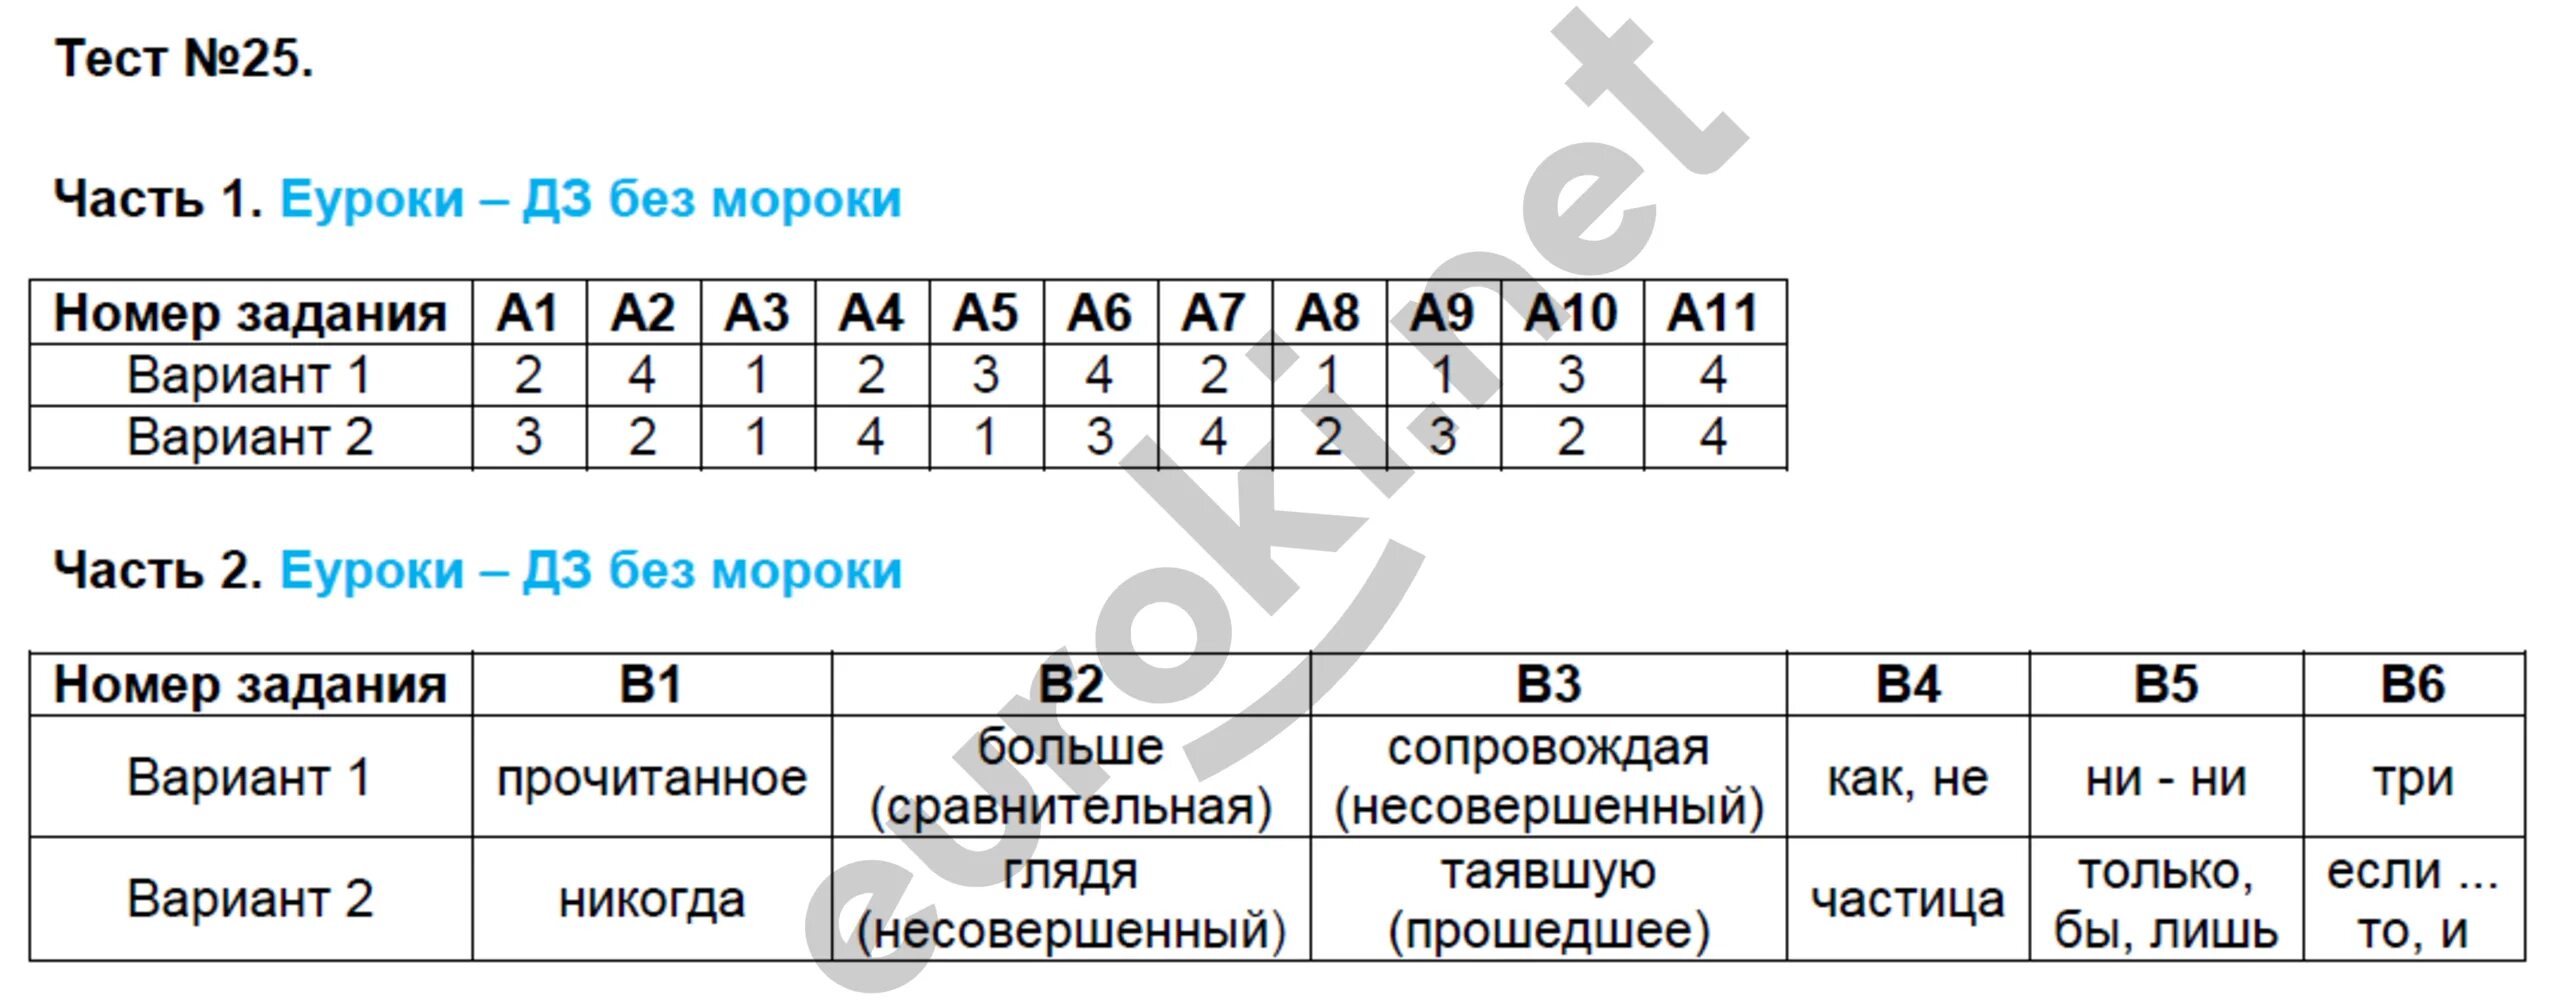 Билеты по русскому языку 7 класс ответы. Тесты Егорова 7 класс по русскому языку. Русский язык 7 класс тематические тесты Егорова.